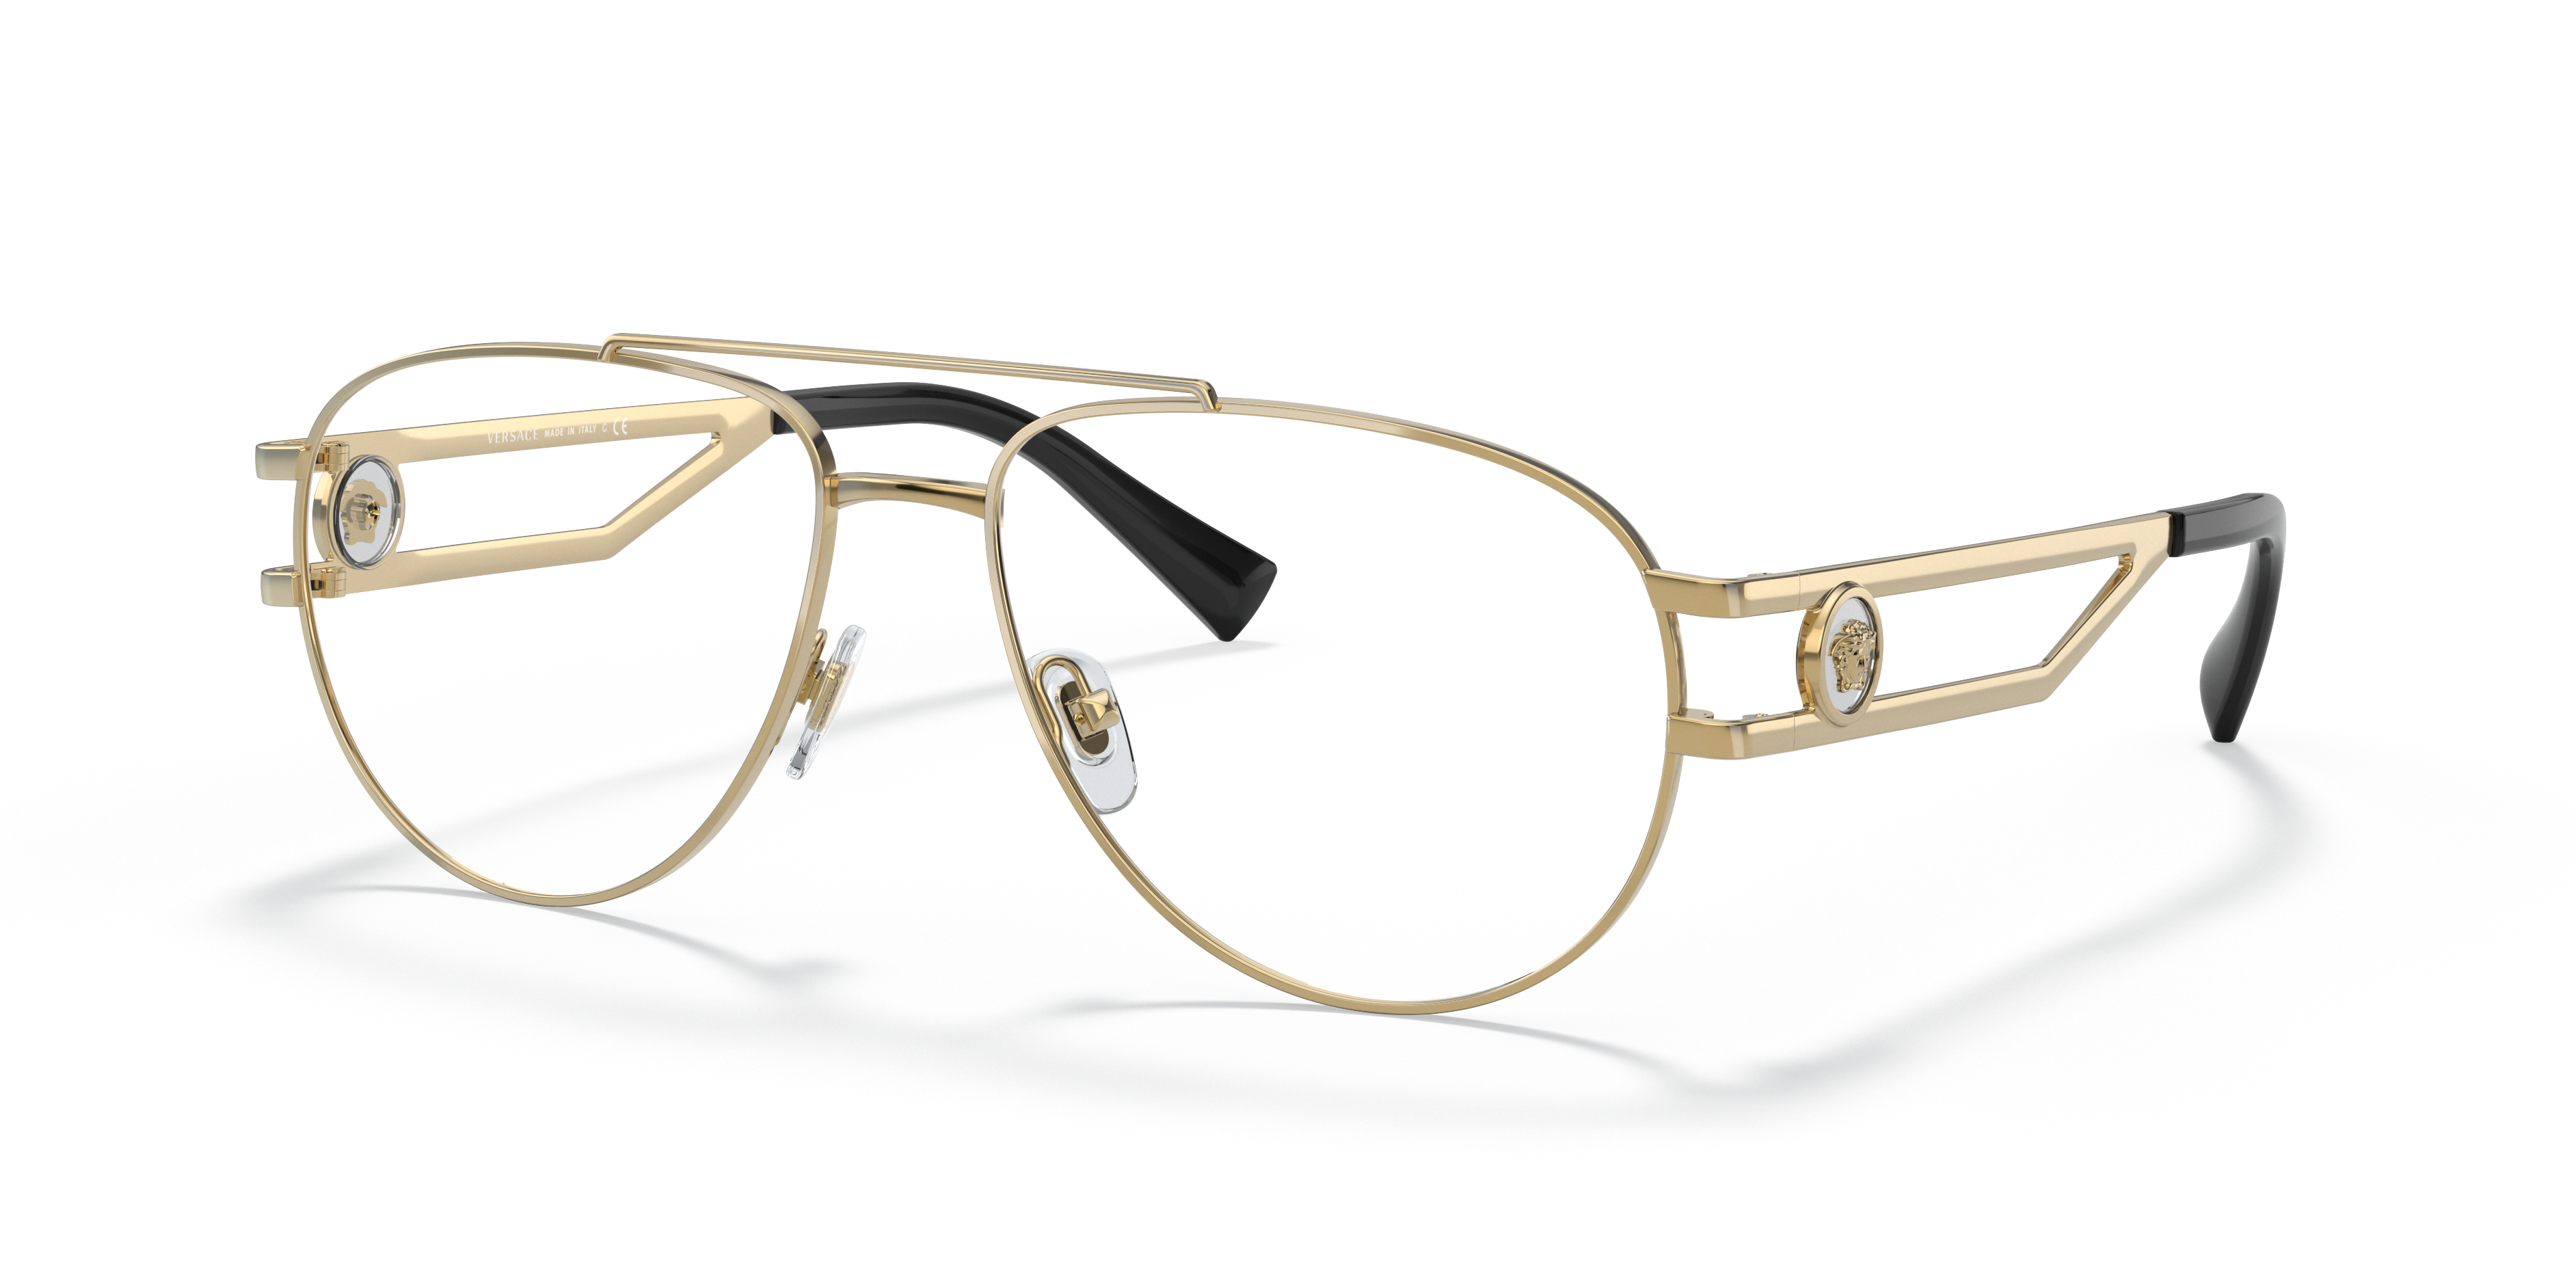 Spectacles Frames New Genuine Versace 1969 Designer Eye Reading Glasses 